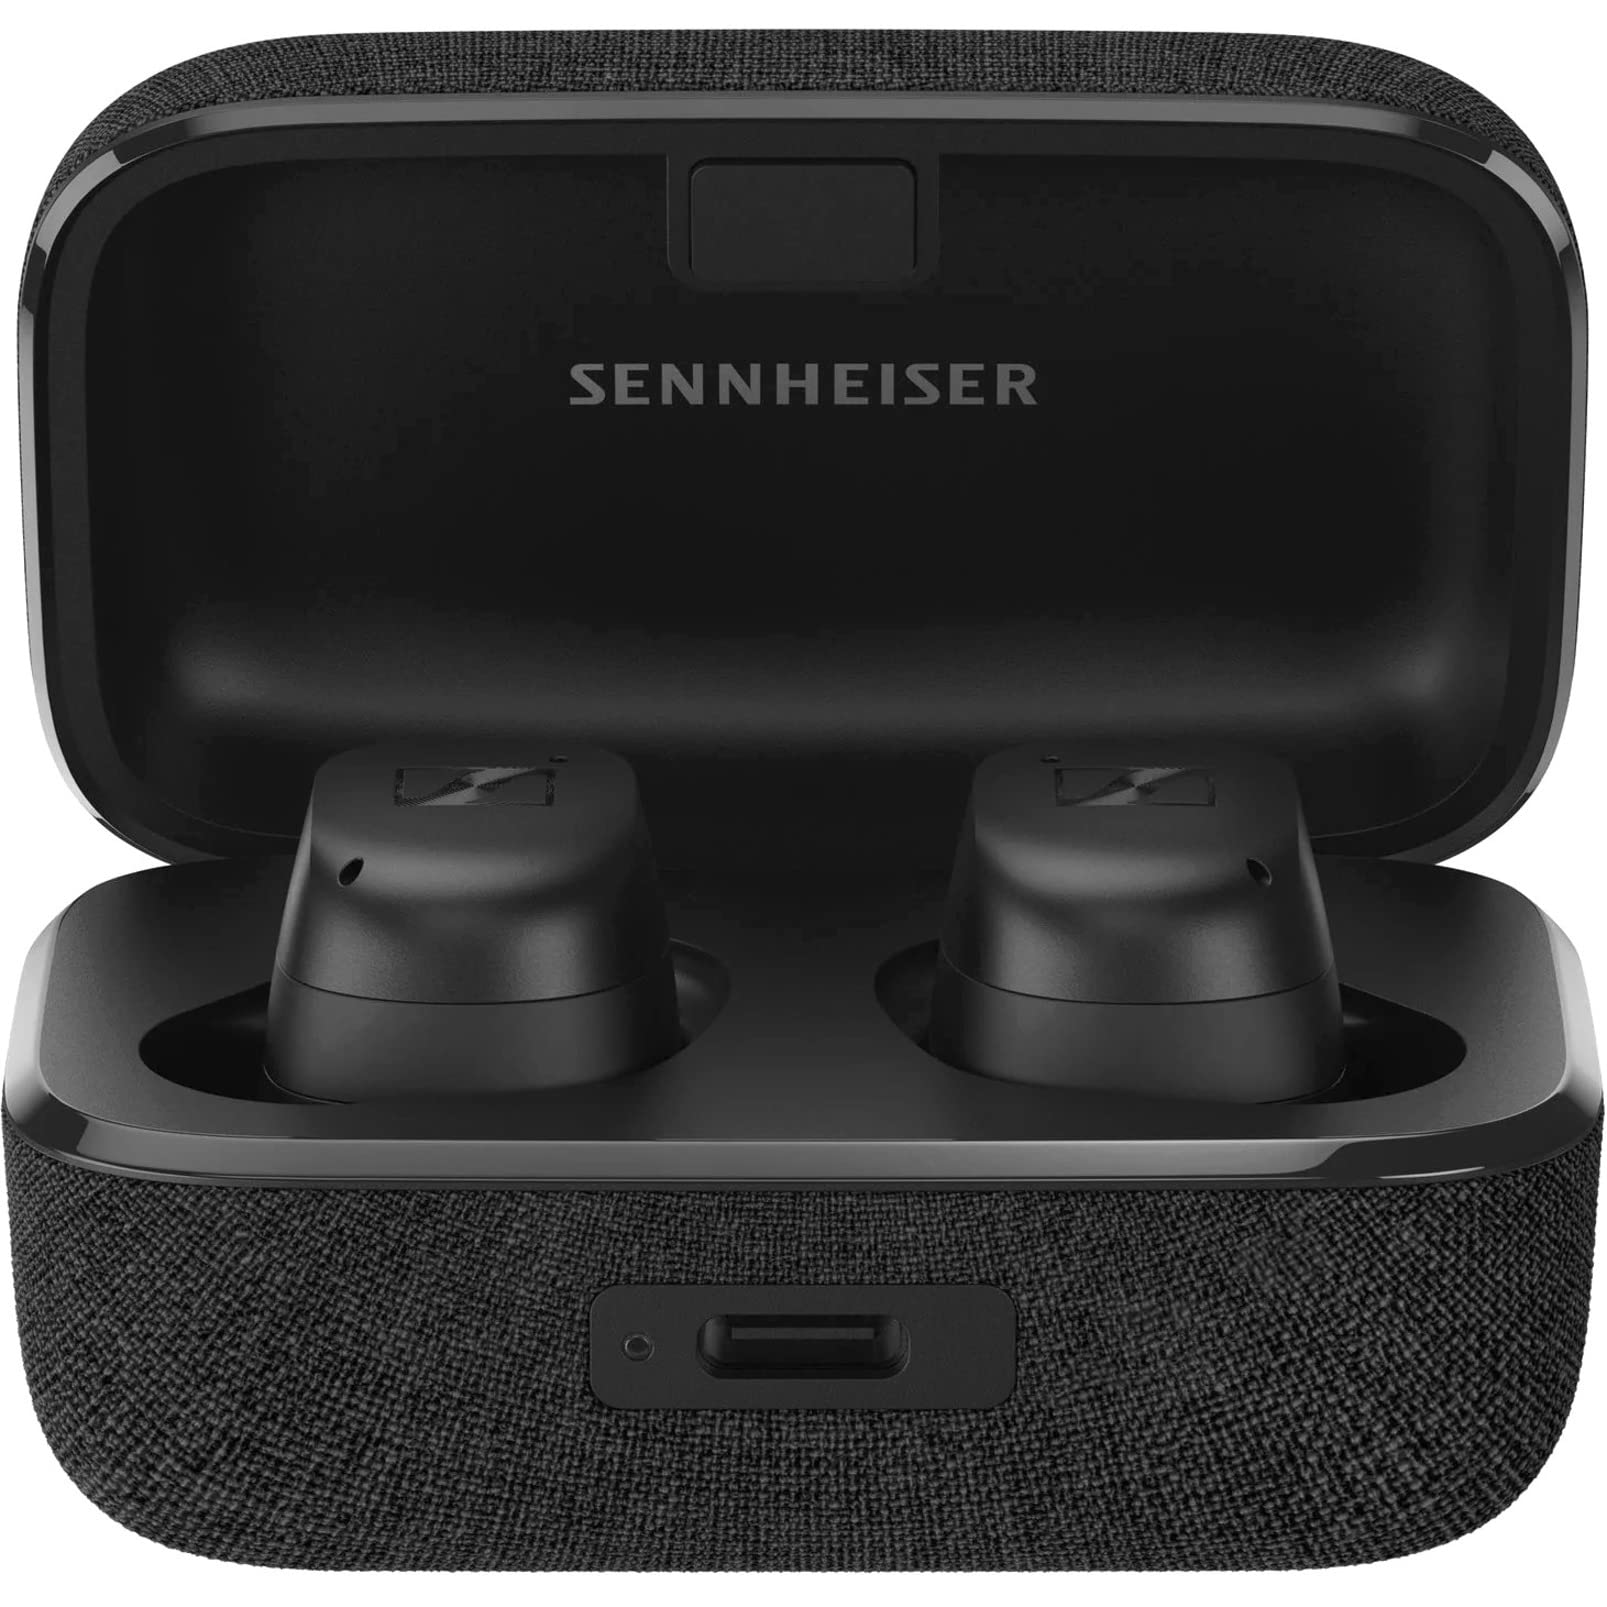 Sennheiser Consumer Audio 젠하이저 모멘텀 트루 와이어리스 3